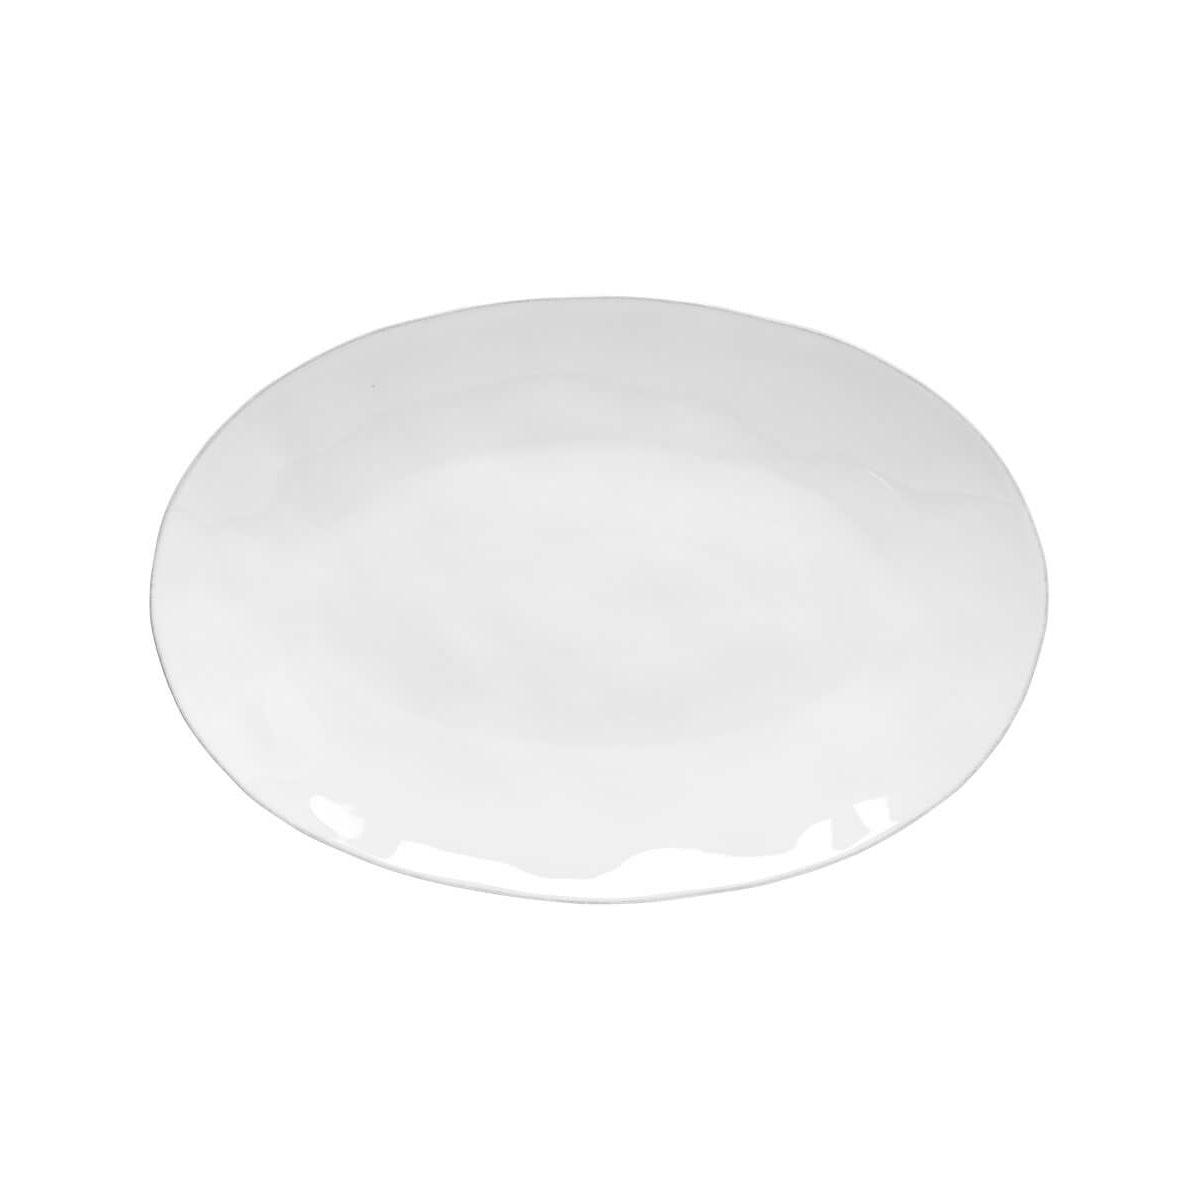 Costa Nova Livia Oval Platter 45cm White